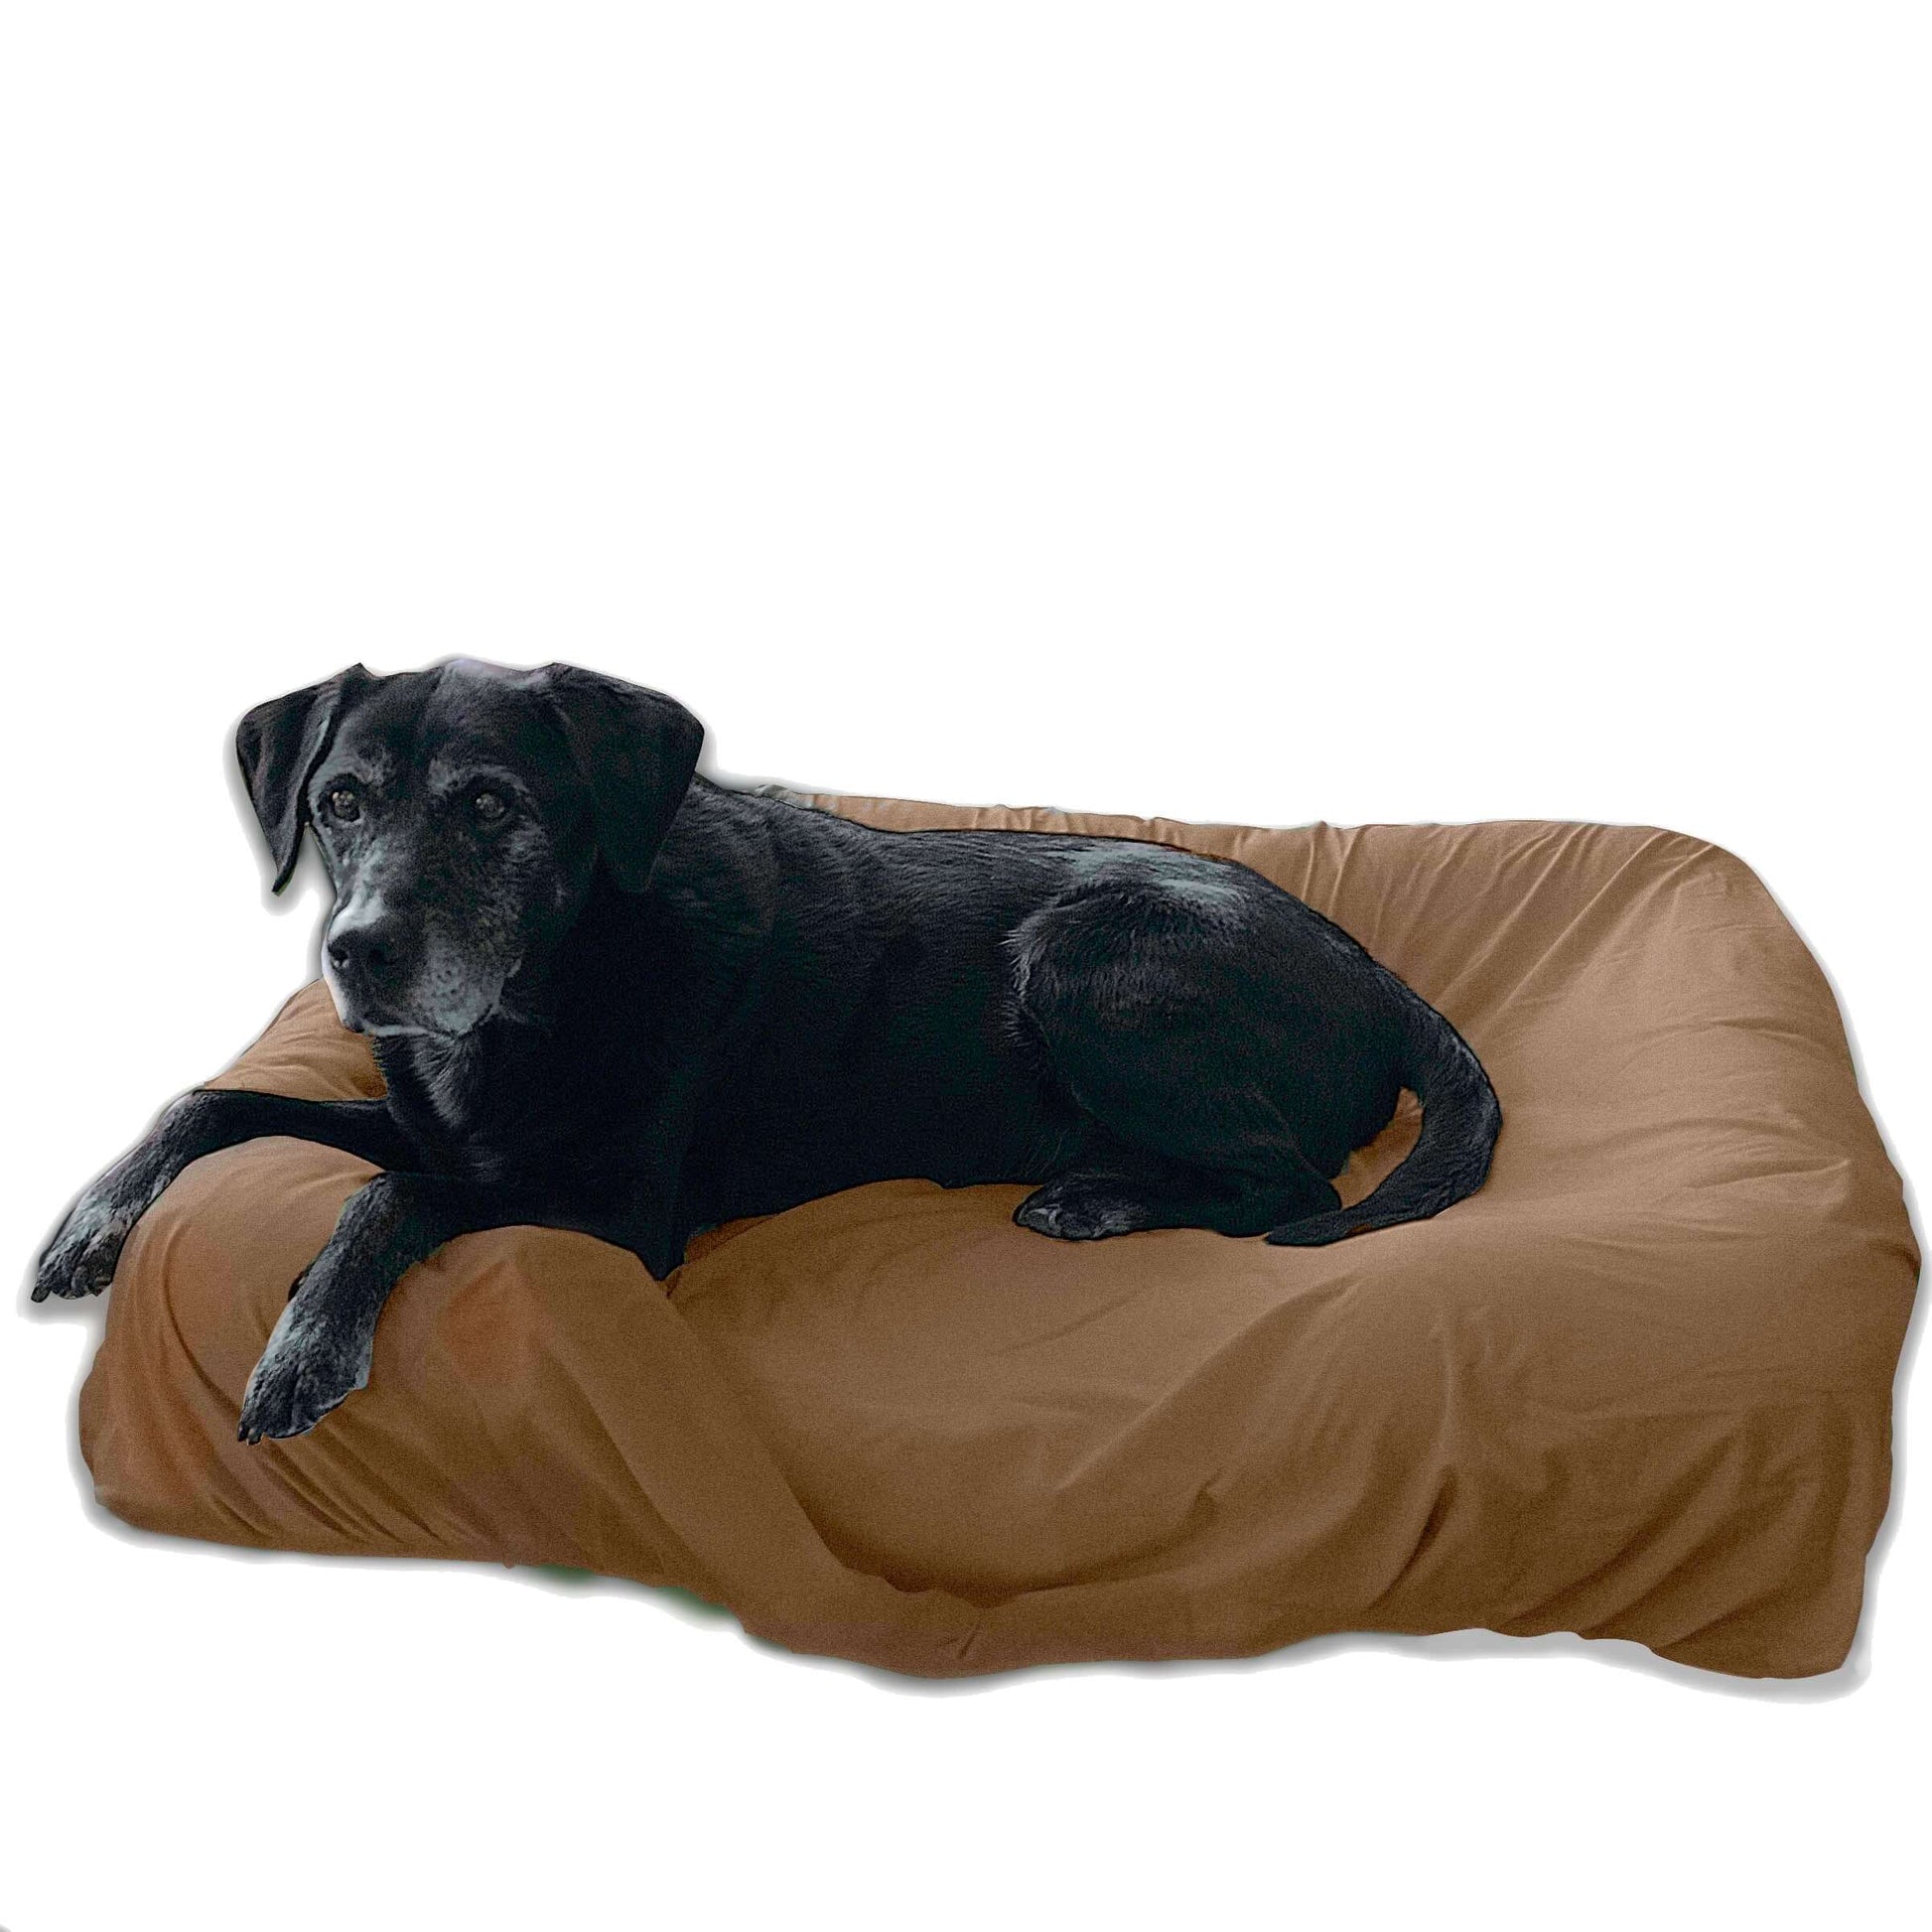 Washable dog bed cover khaki